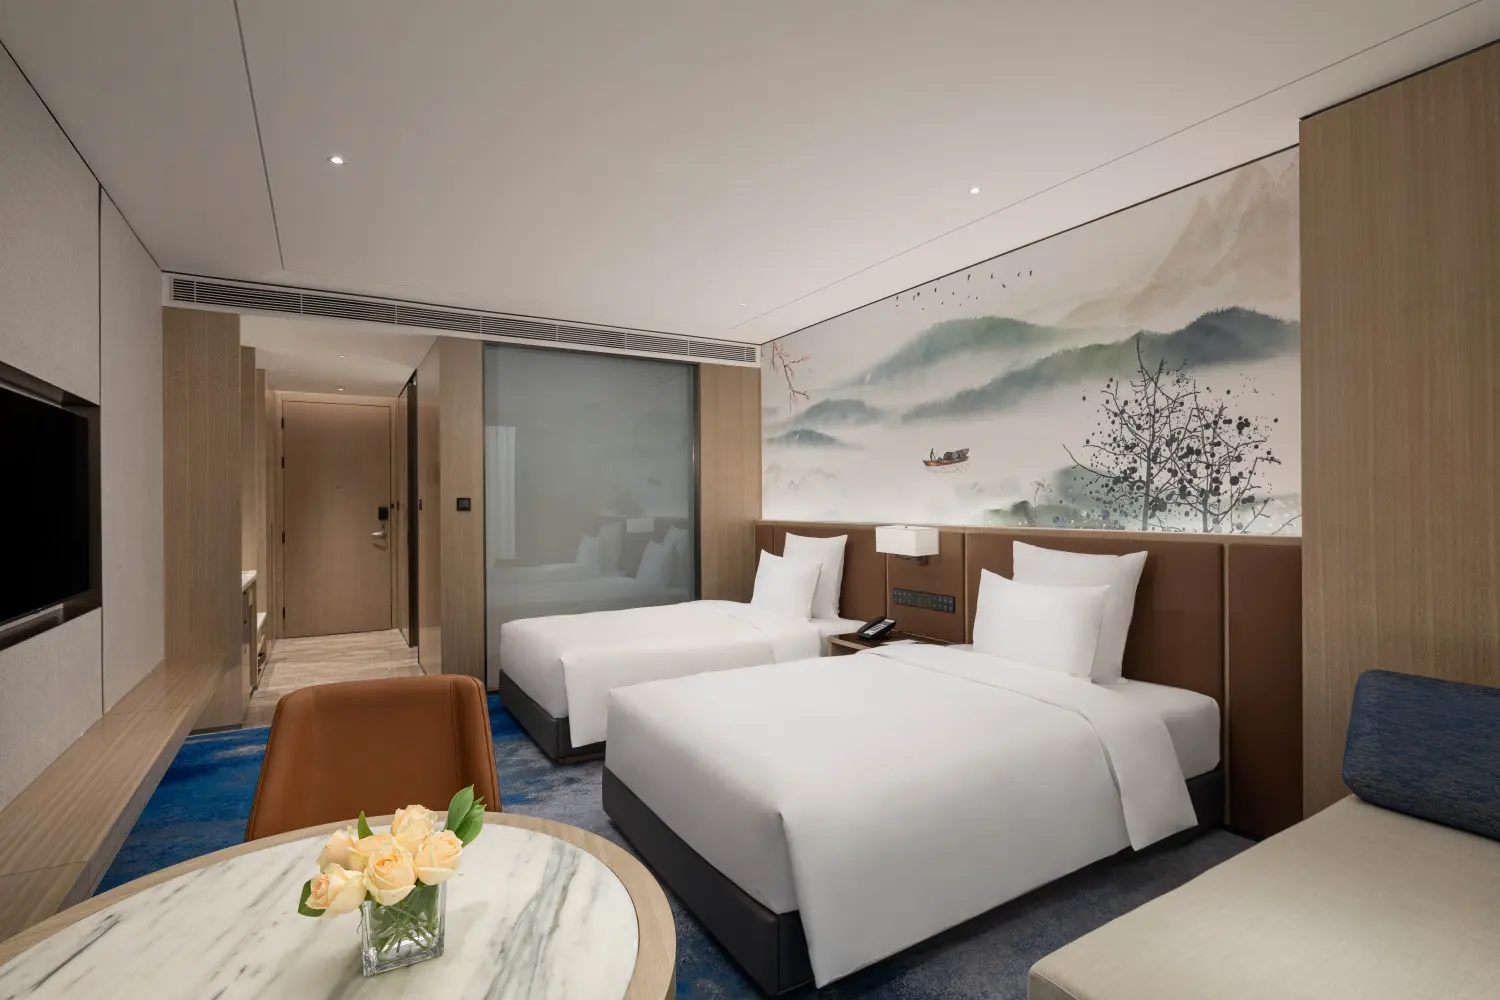 Diseño moderno Hoteles de EE. UU. Holiday Inn Express Hotel Muebles de dormitorio King Size Juego de dormitorio